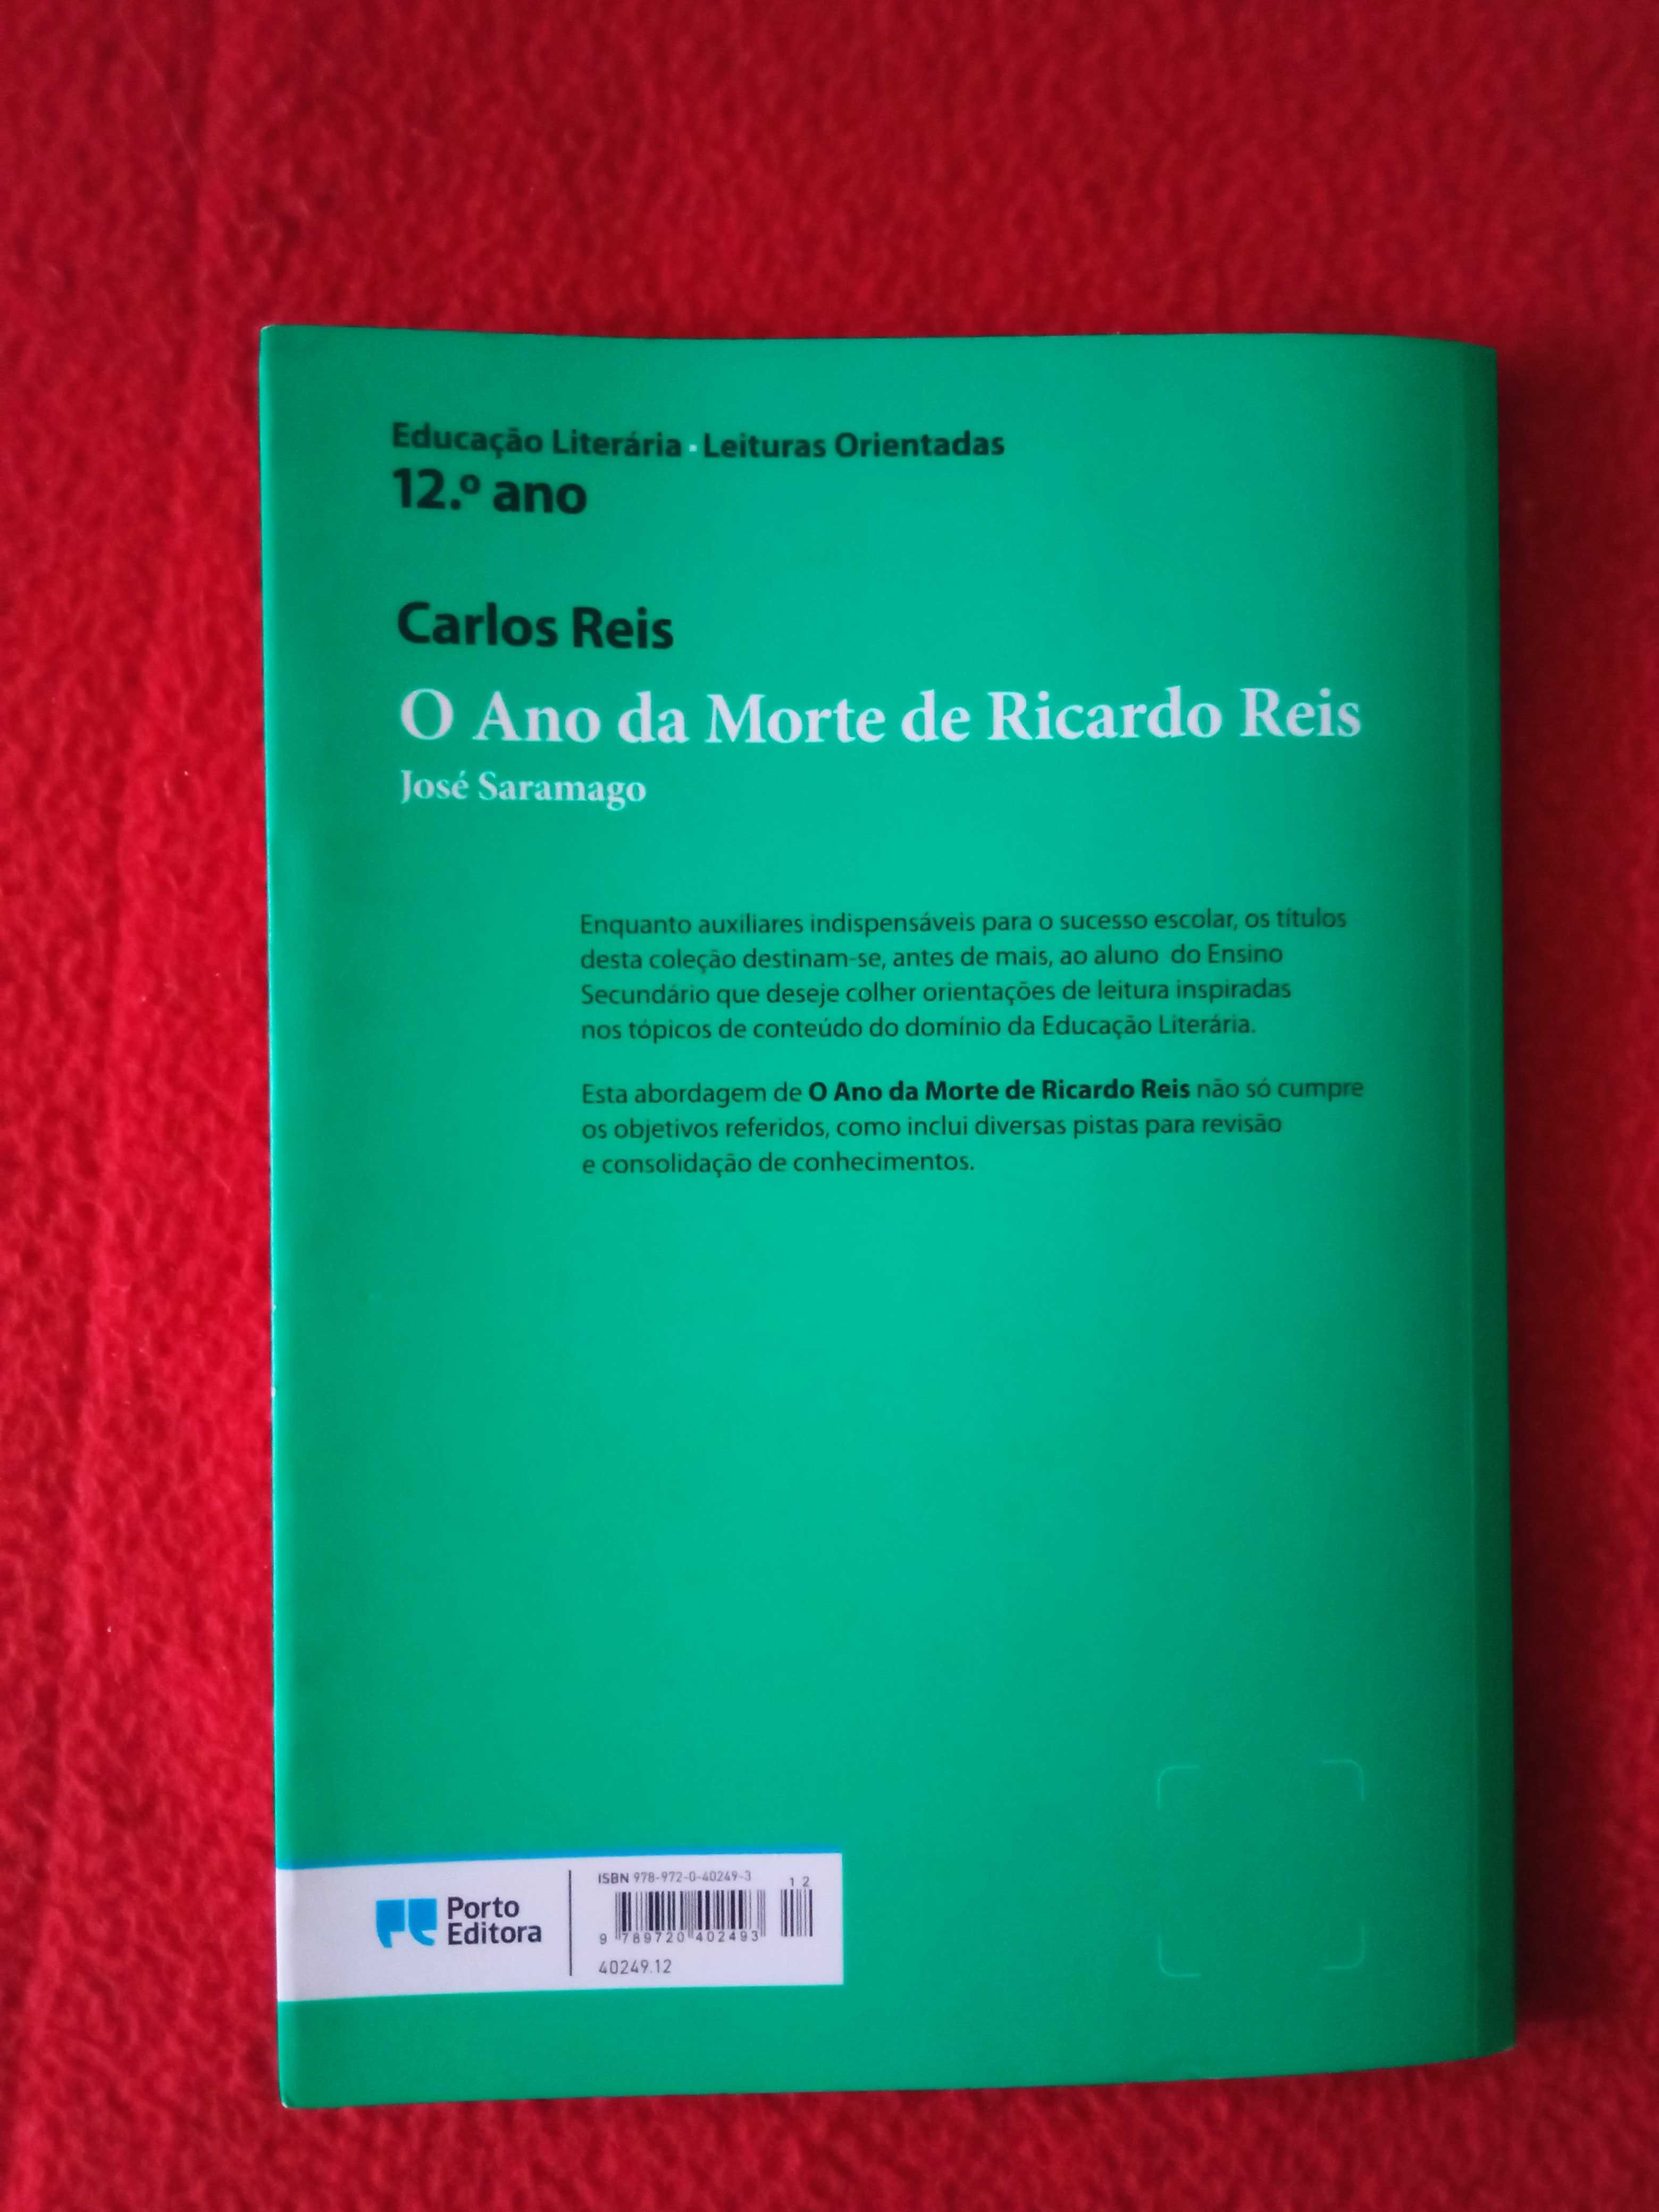 Livro- resumo "O Ano da Morte de Ricardo Reis" de José Saramago